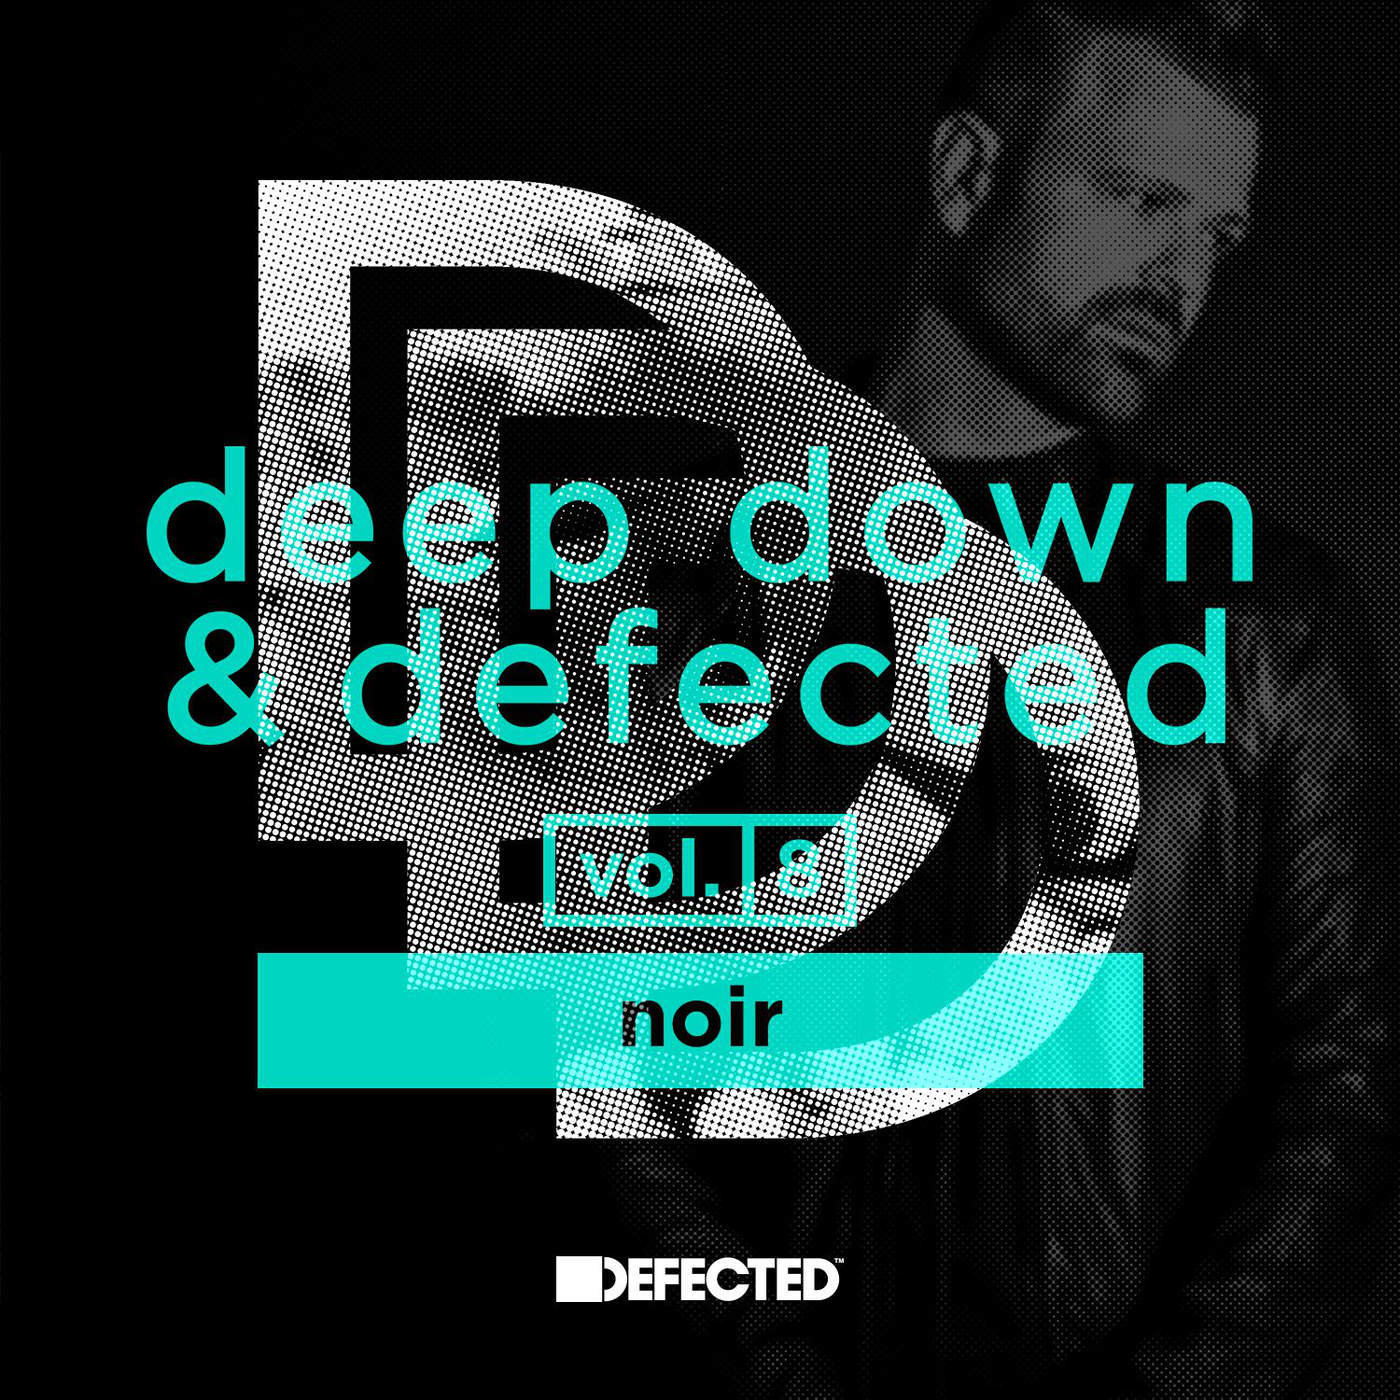 00-VA-Deep Down & Defected Vol. 8 Noir-2015-